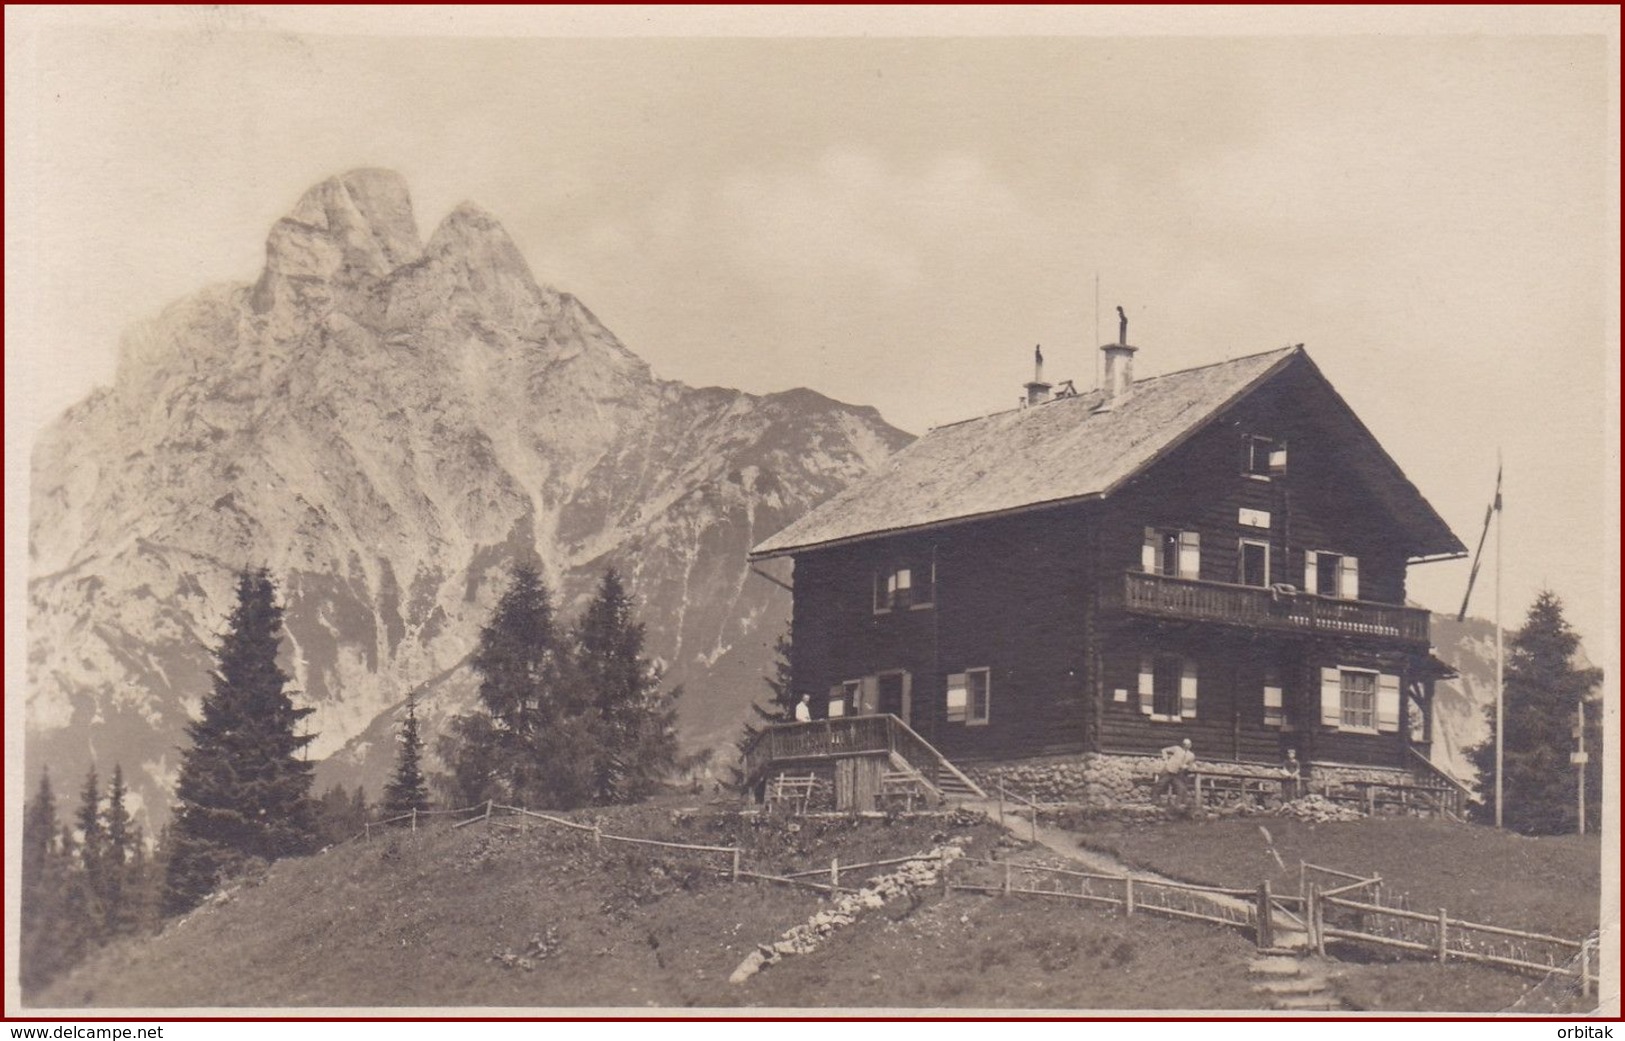 Mödlinger Hütte * Mit Reichenstein, Berghütte, Alpen * Österreich * AK2819 - Liezen